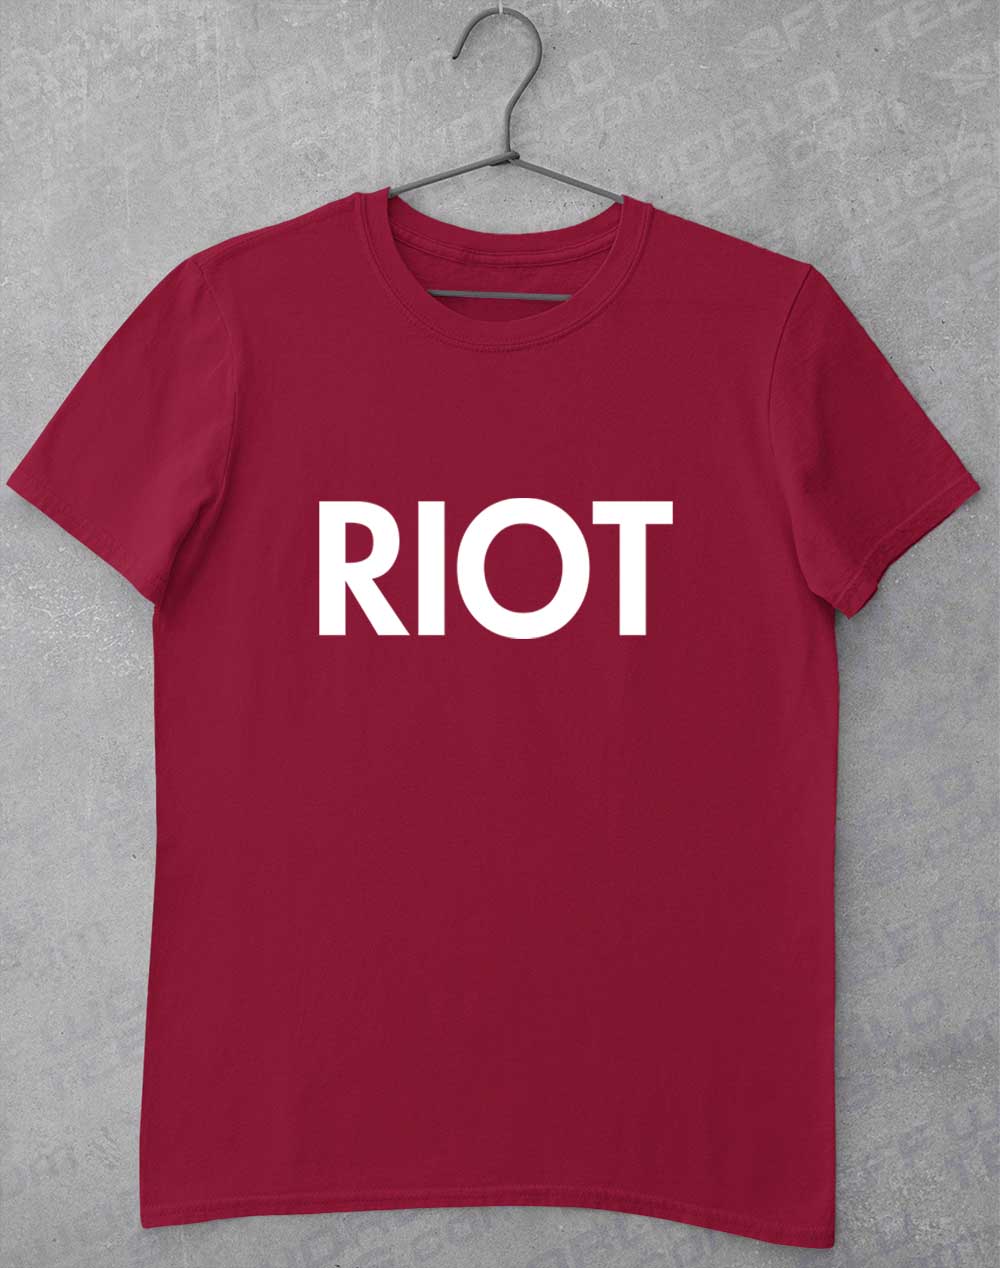 Cardinal Red - Mac's Riot T-Shirt